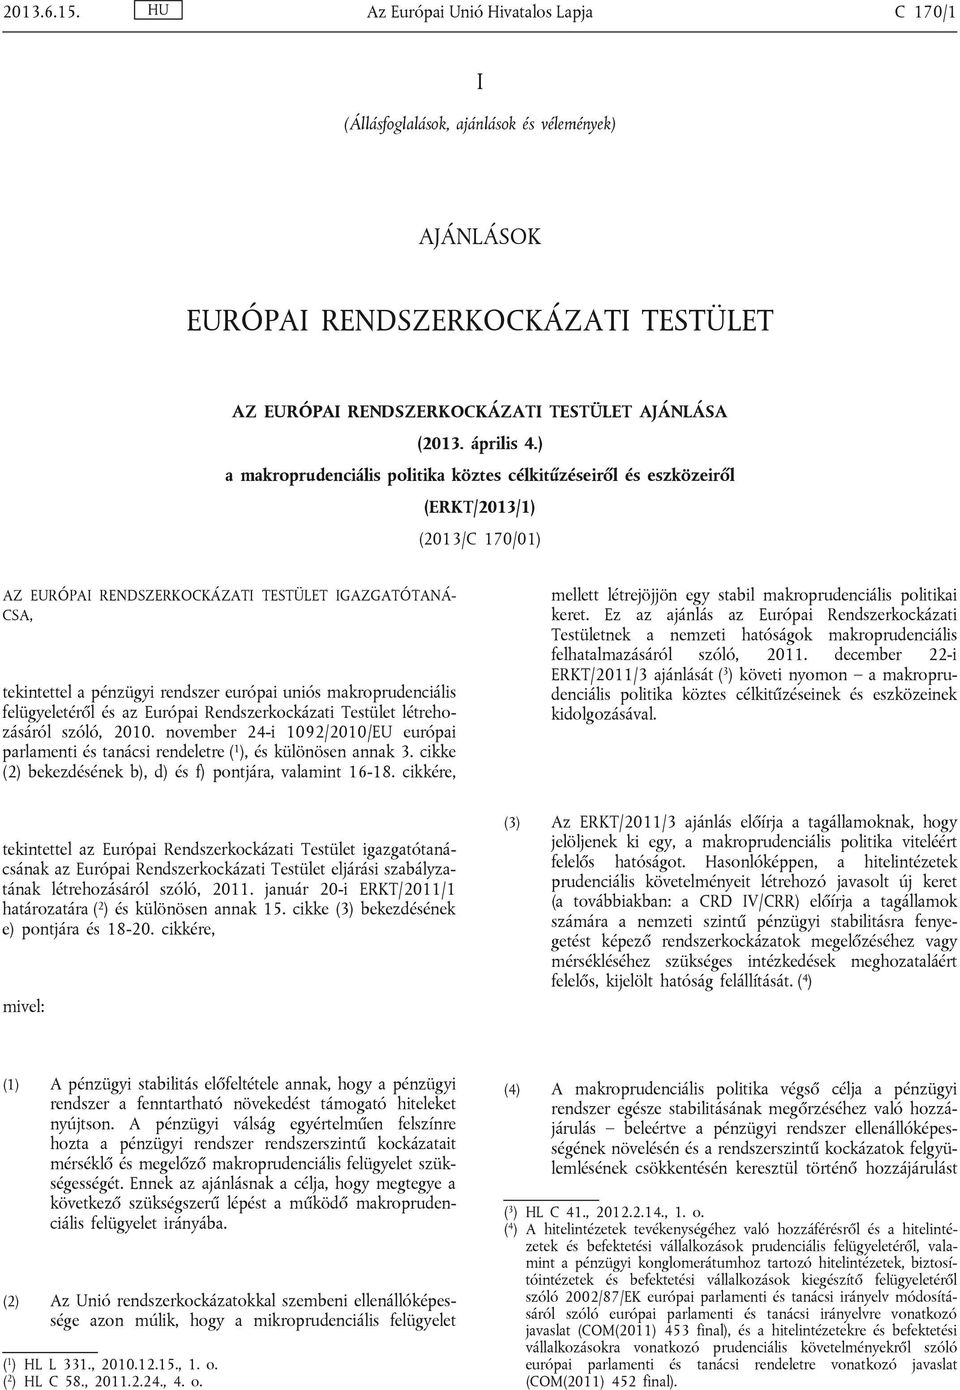 ) a makroprudenciális politika köztes célkitűzéseiről és eszközeiről (ERKT/2013/1) (2013/C 170/01) AZ EURÓPAI RENDSZERKOCKÁZATI TESTÜLET IGAZGATÓTANÁ CSA, tekintettel a pénzügyi rendszer európai